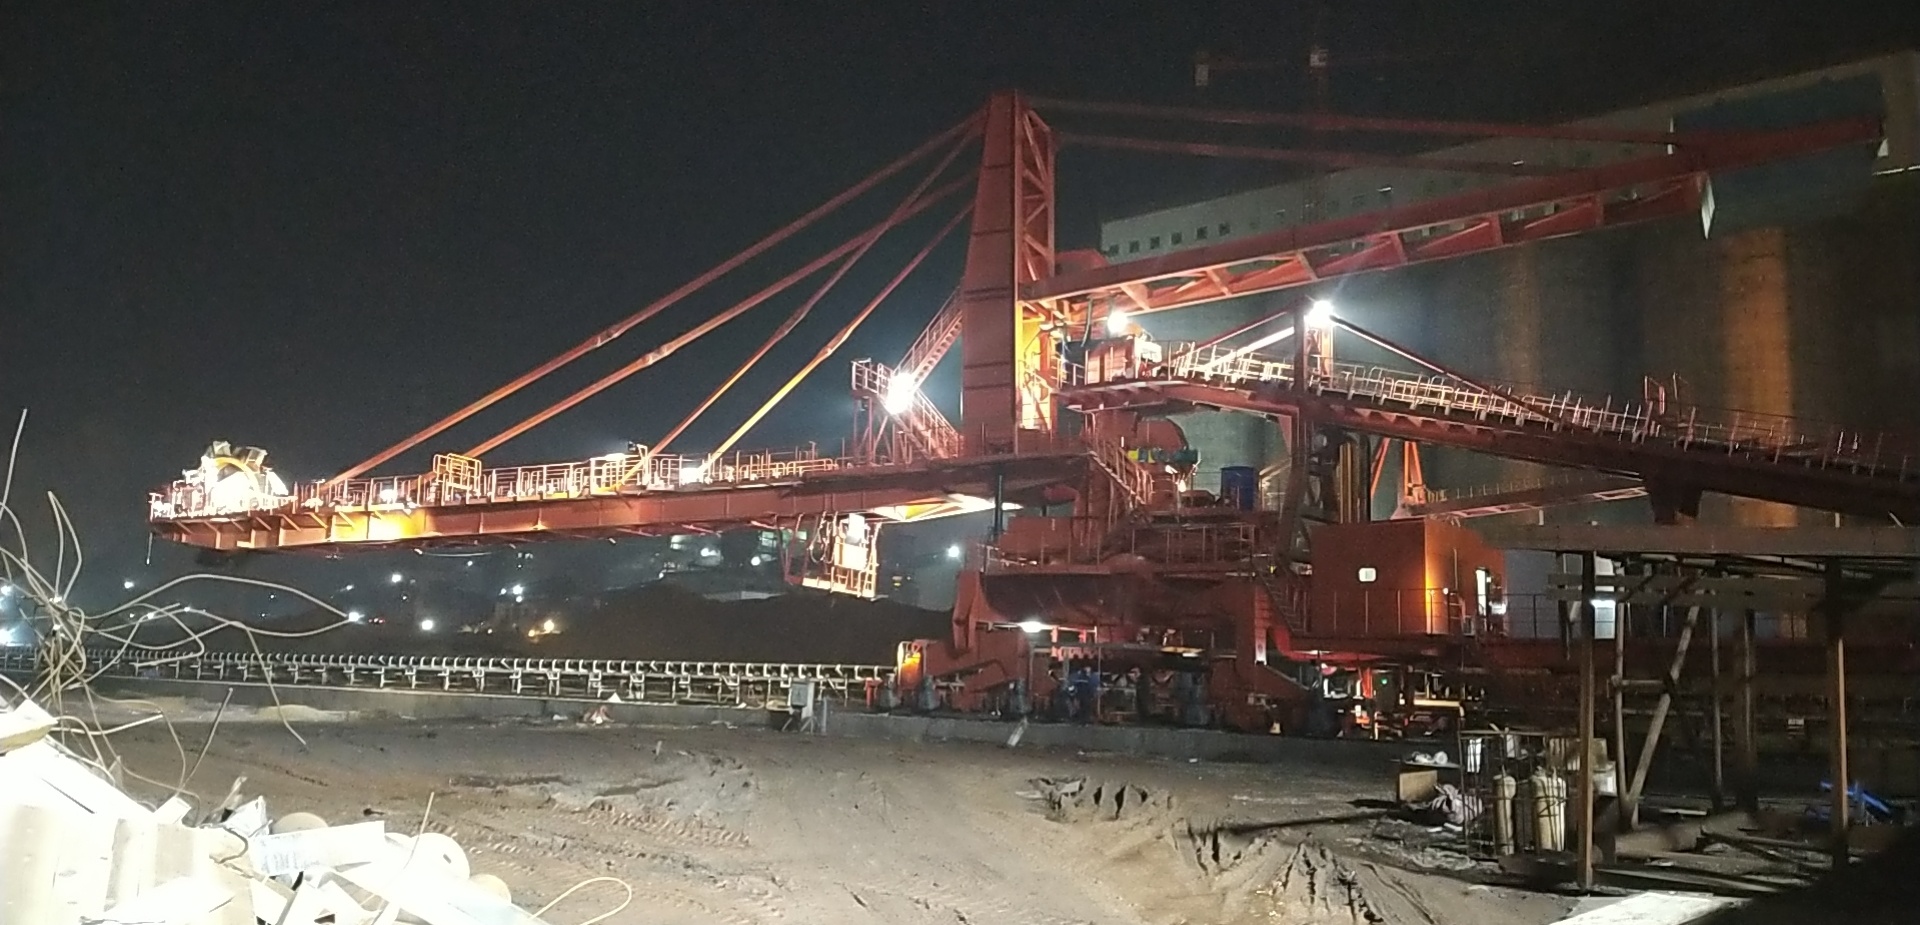 重庆钢铁股份有限公司两台斗轮堆取料机进入调试阶段